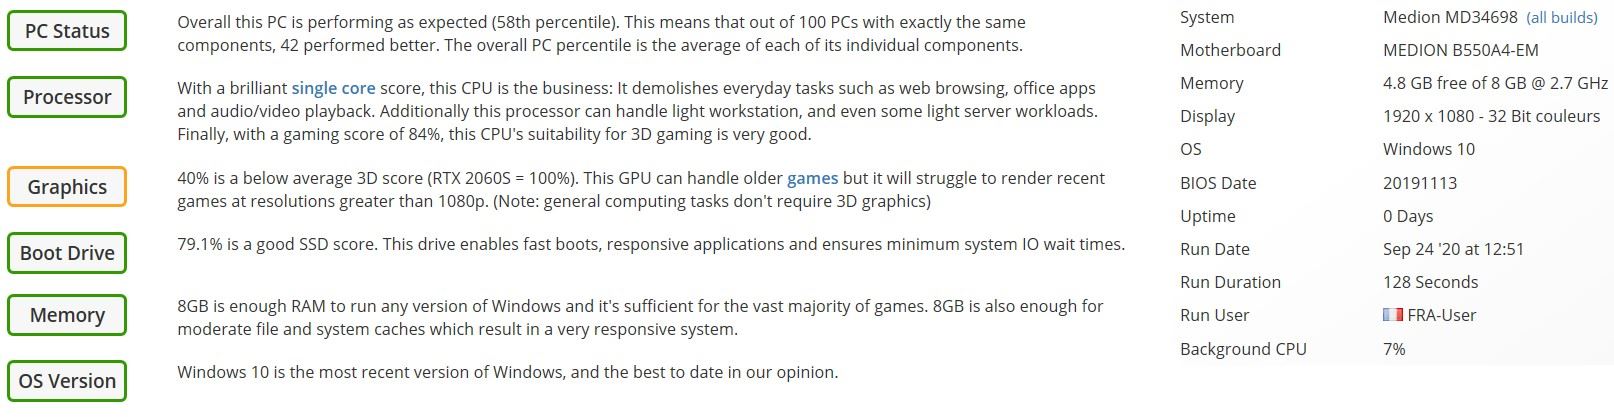 Test-PC_Gaming_Medion